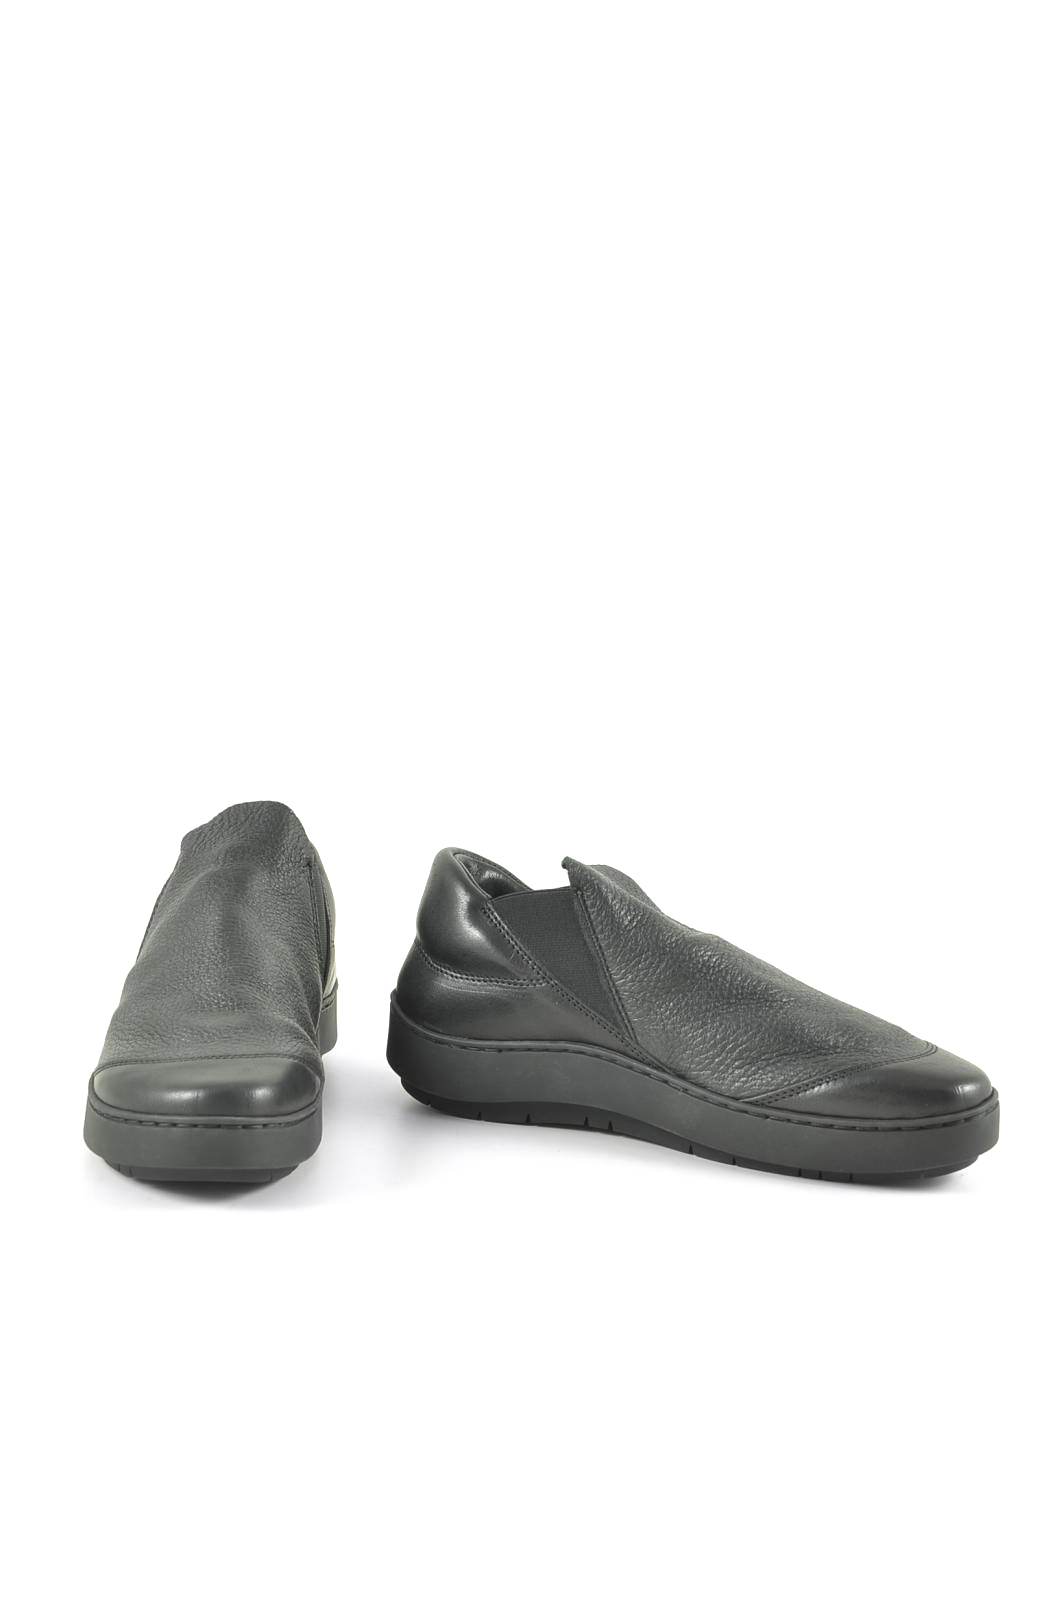 trippen shoes 219